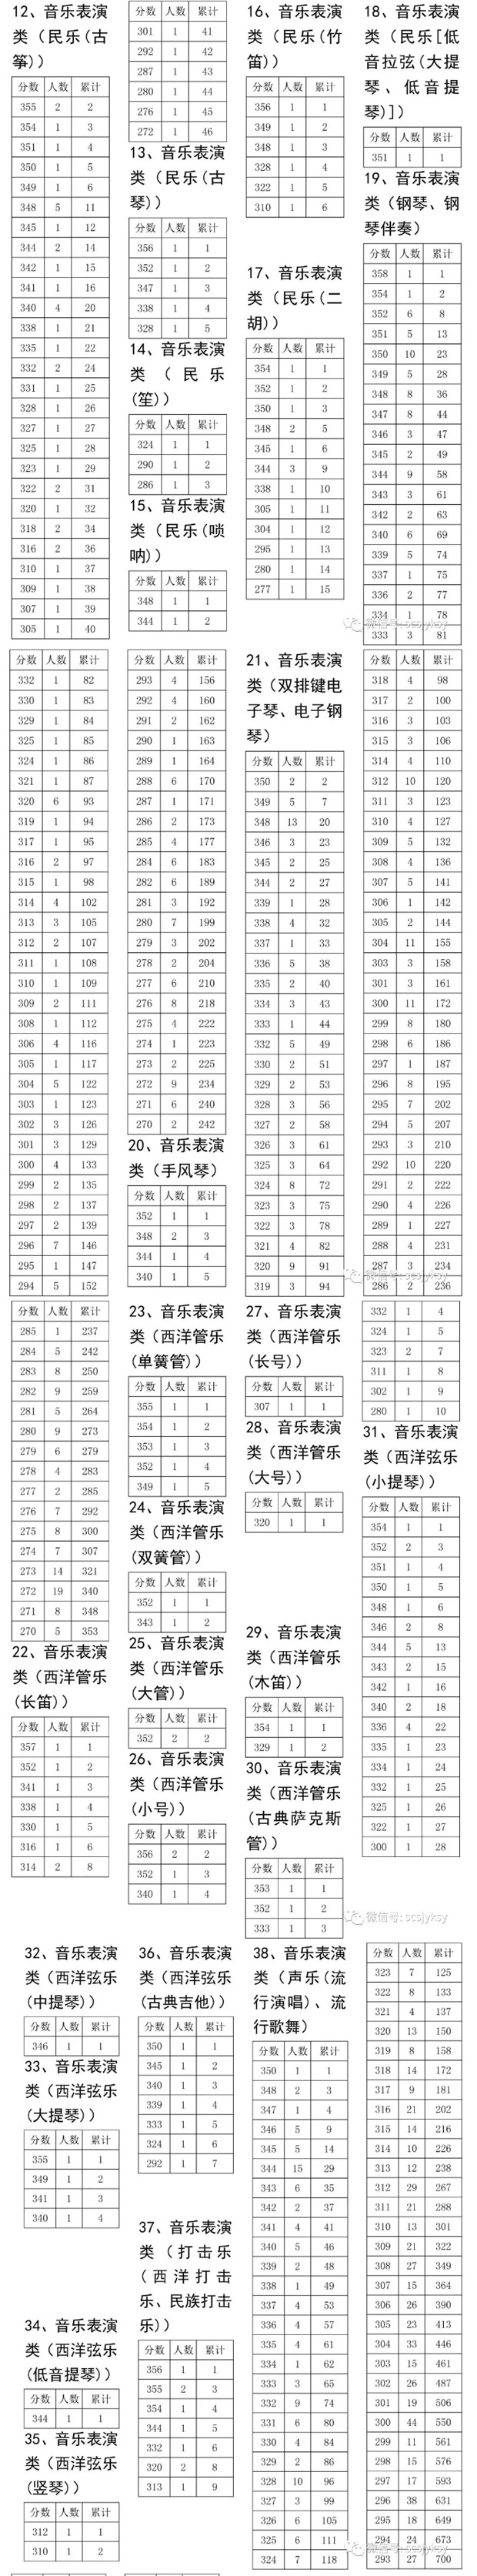 2018年四川高考艺术体育类本科上线考生一分段表